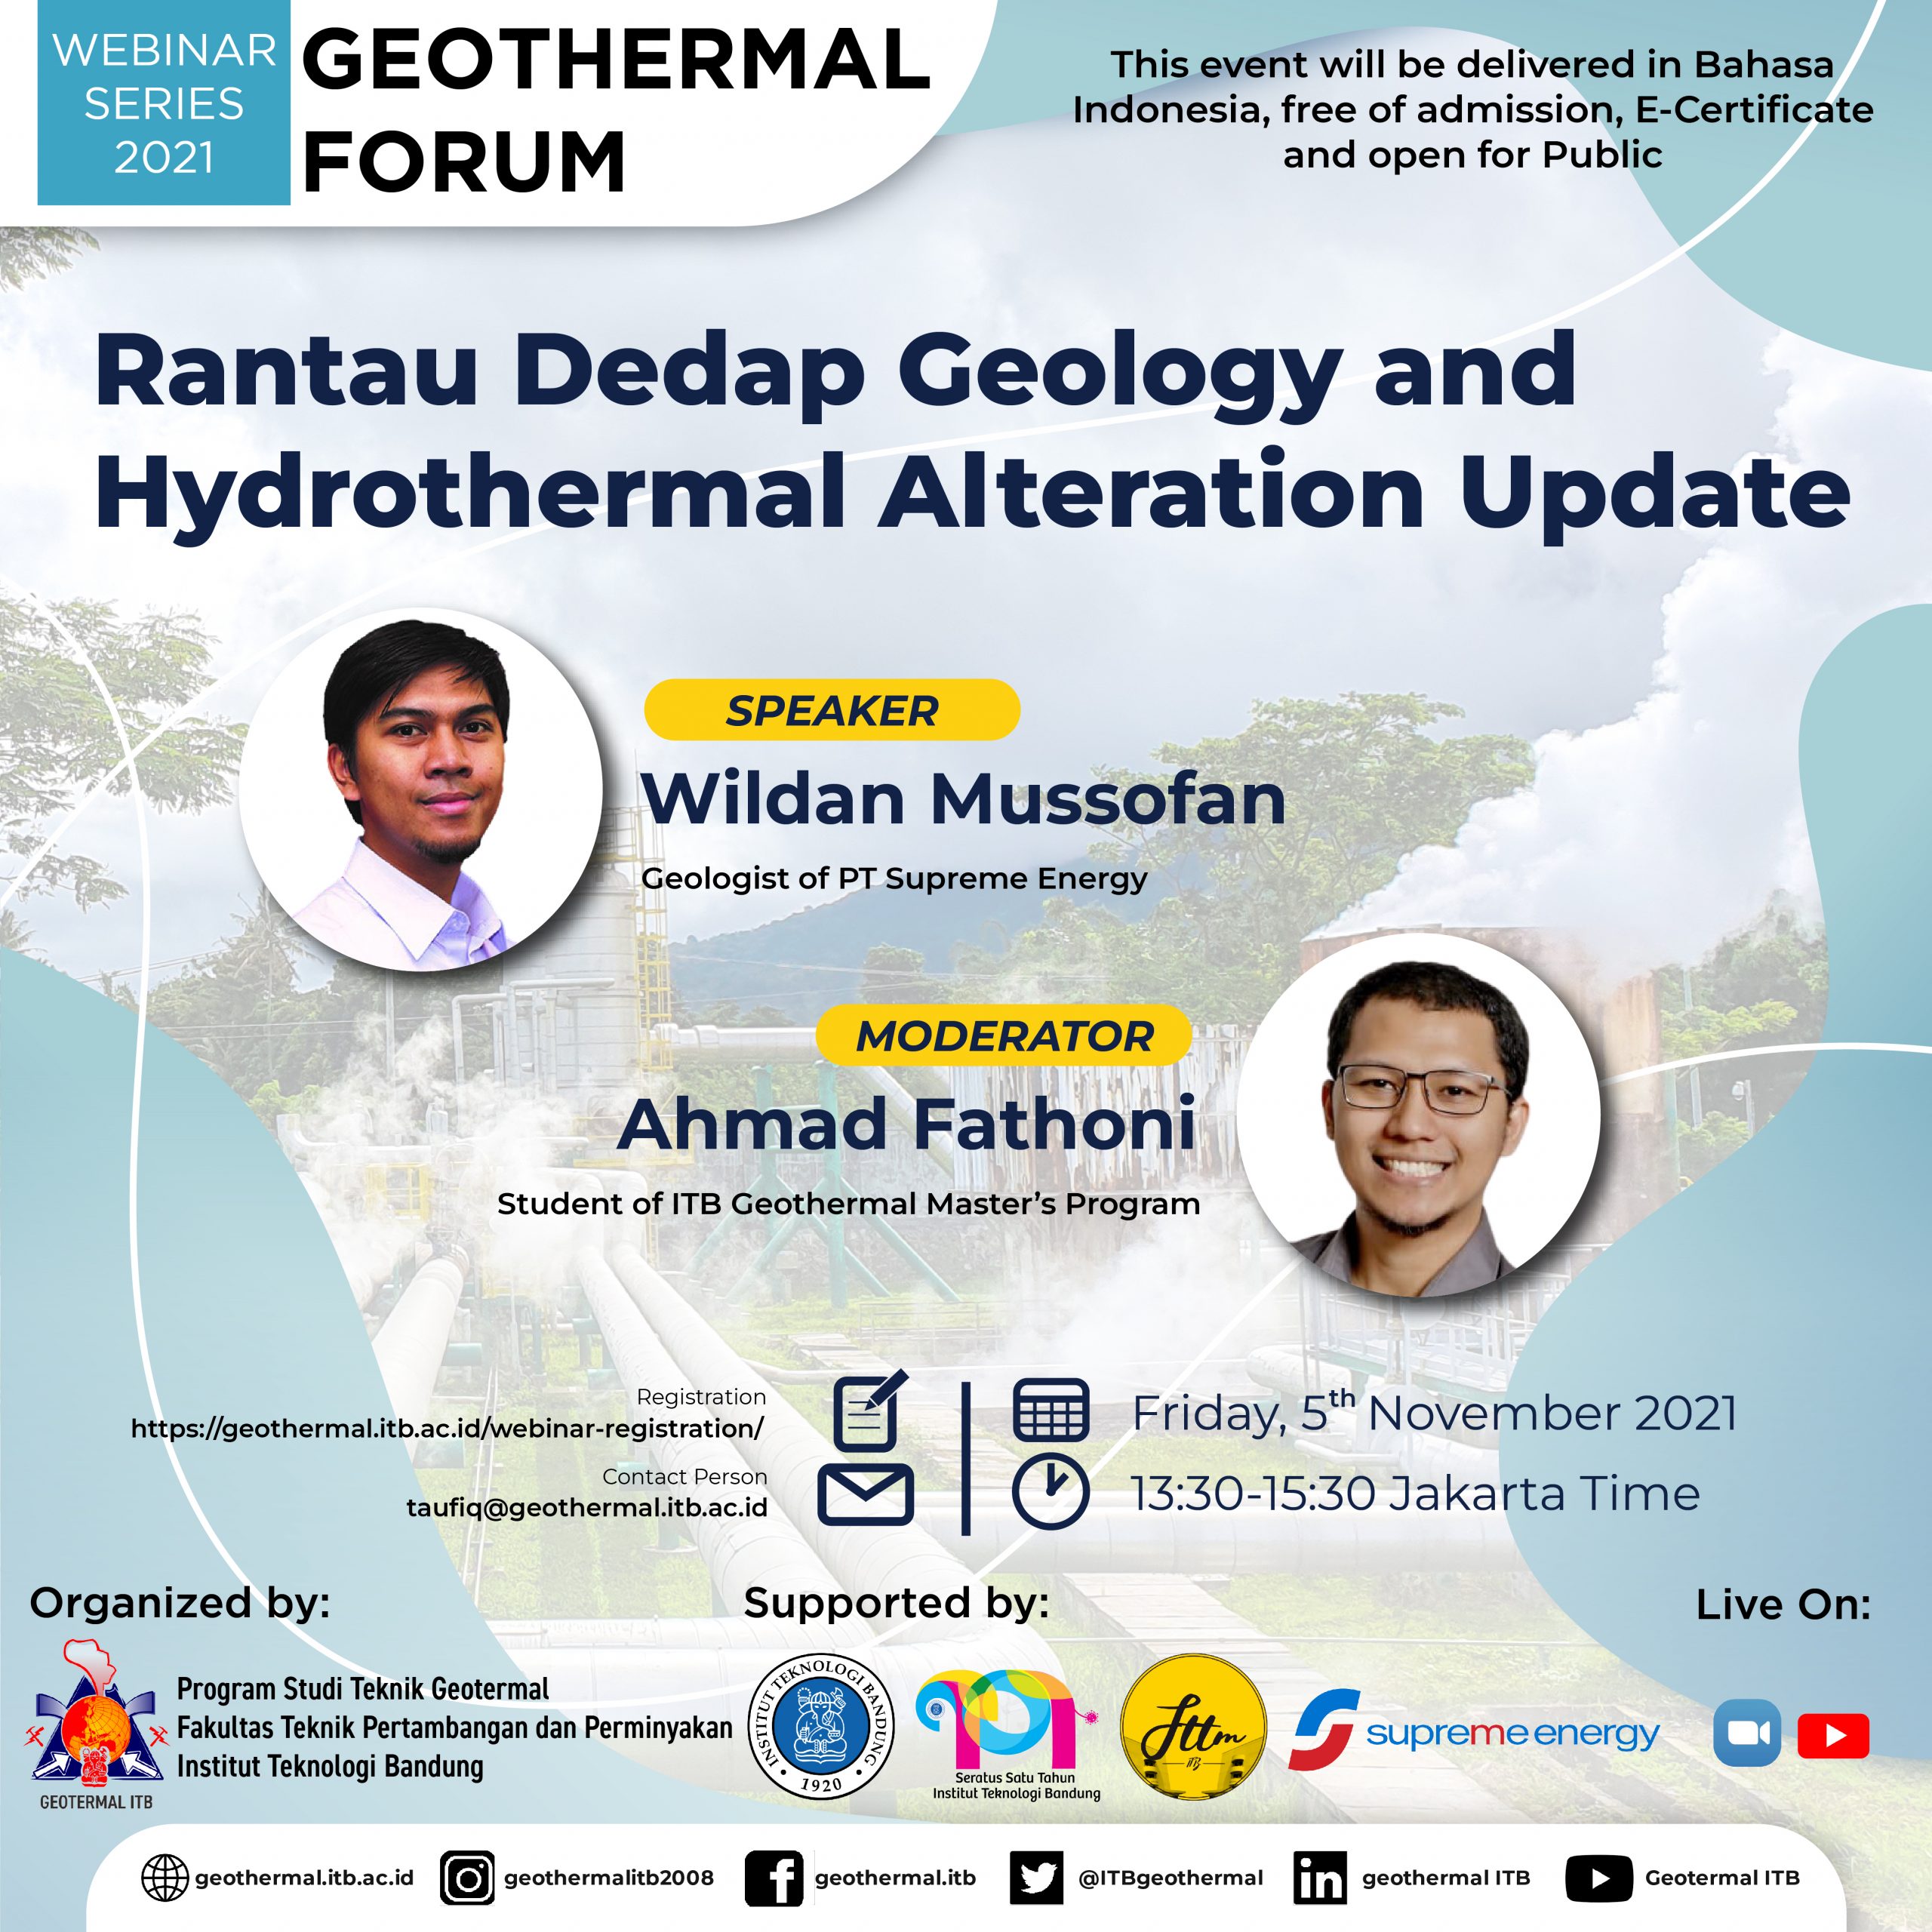 Geothermal Forum: Rantau Dedap Geology and Hydrothermal Alteration Update